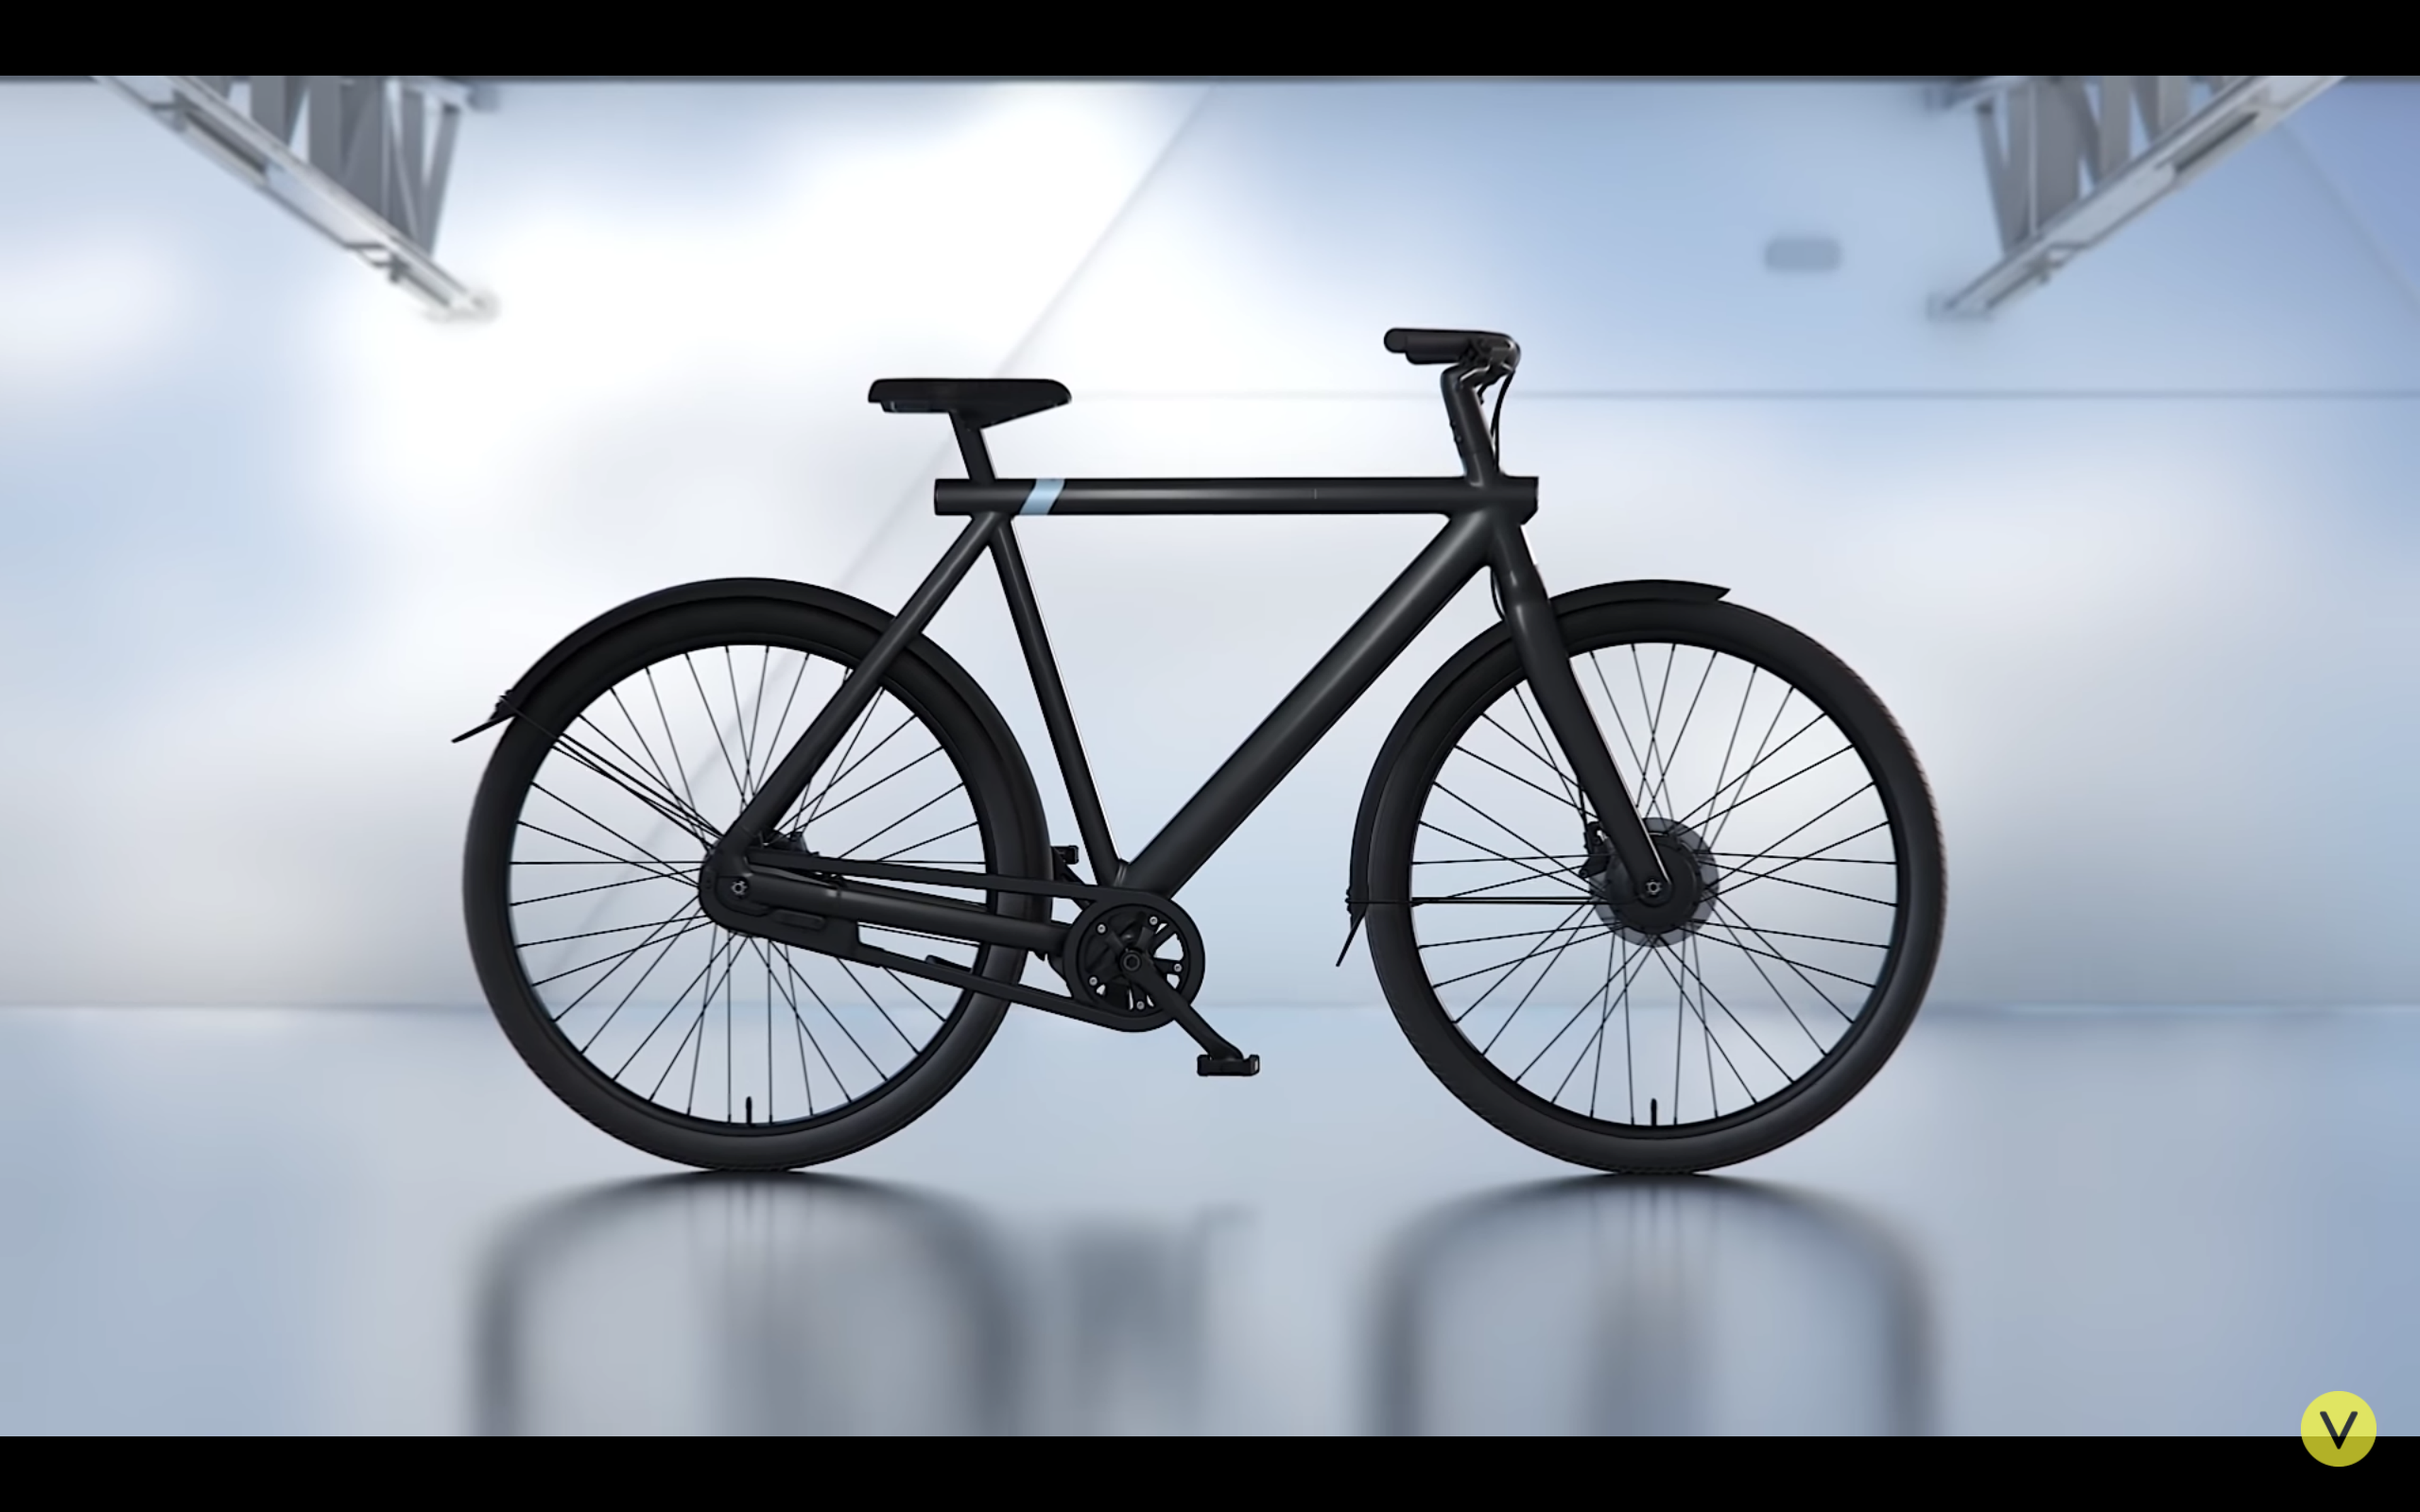 Un fotograma del anuncio de bicicletas eléctricas VanMoof censurado.